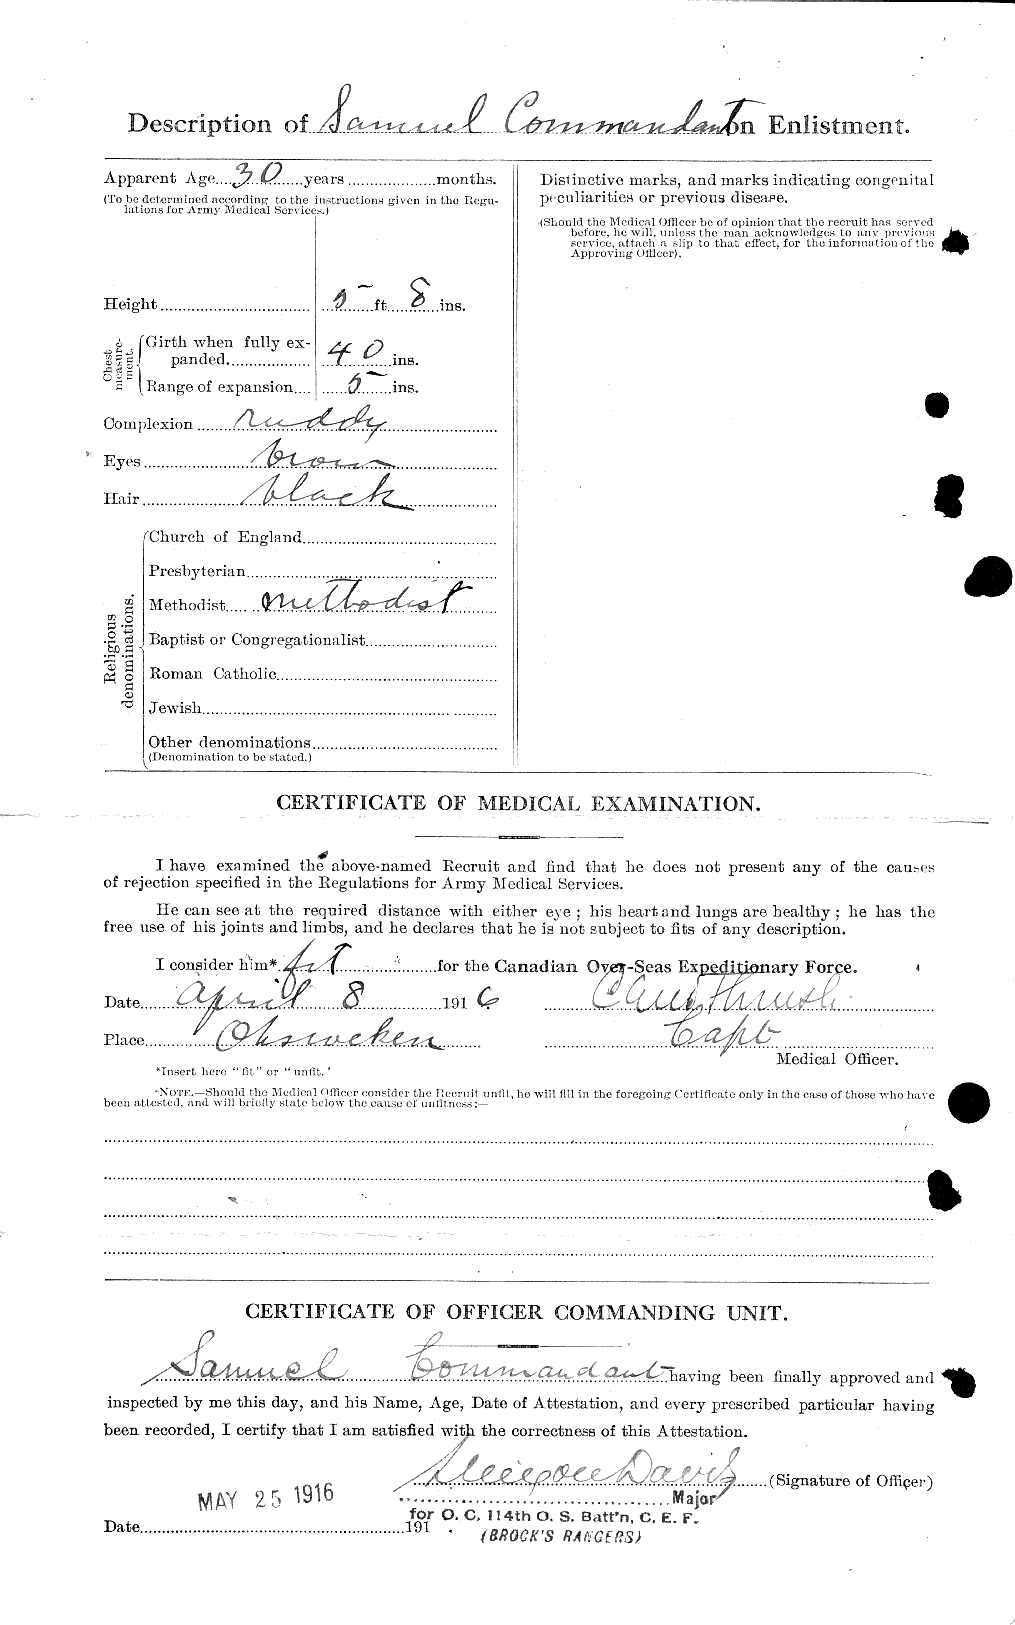 Dossiers du Personnel de la Première Guerre mondiale - CEC 040935b